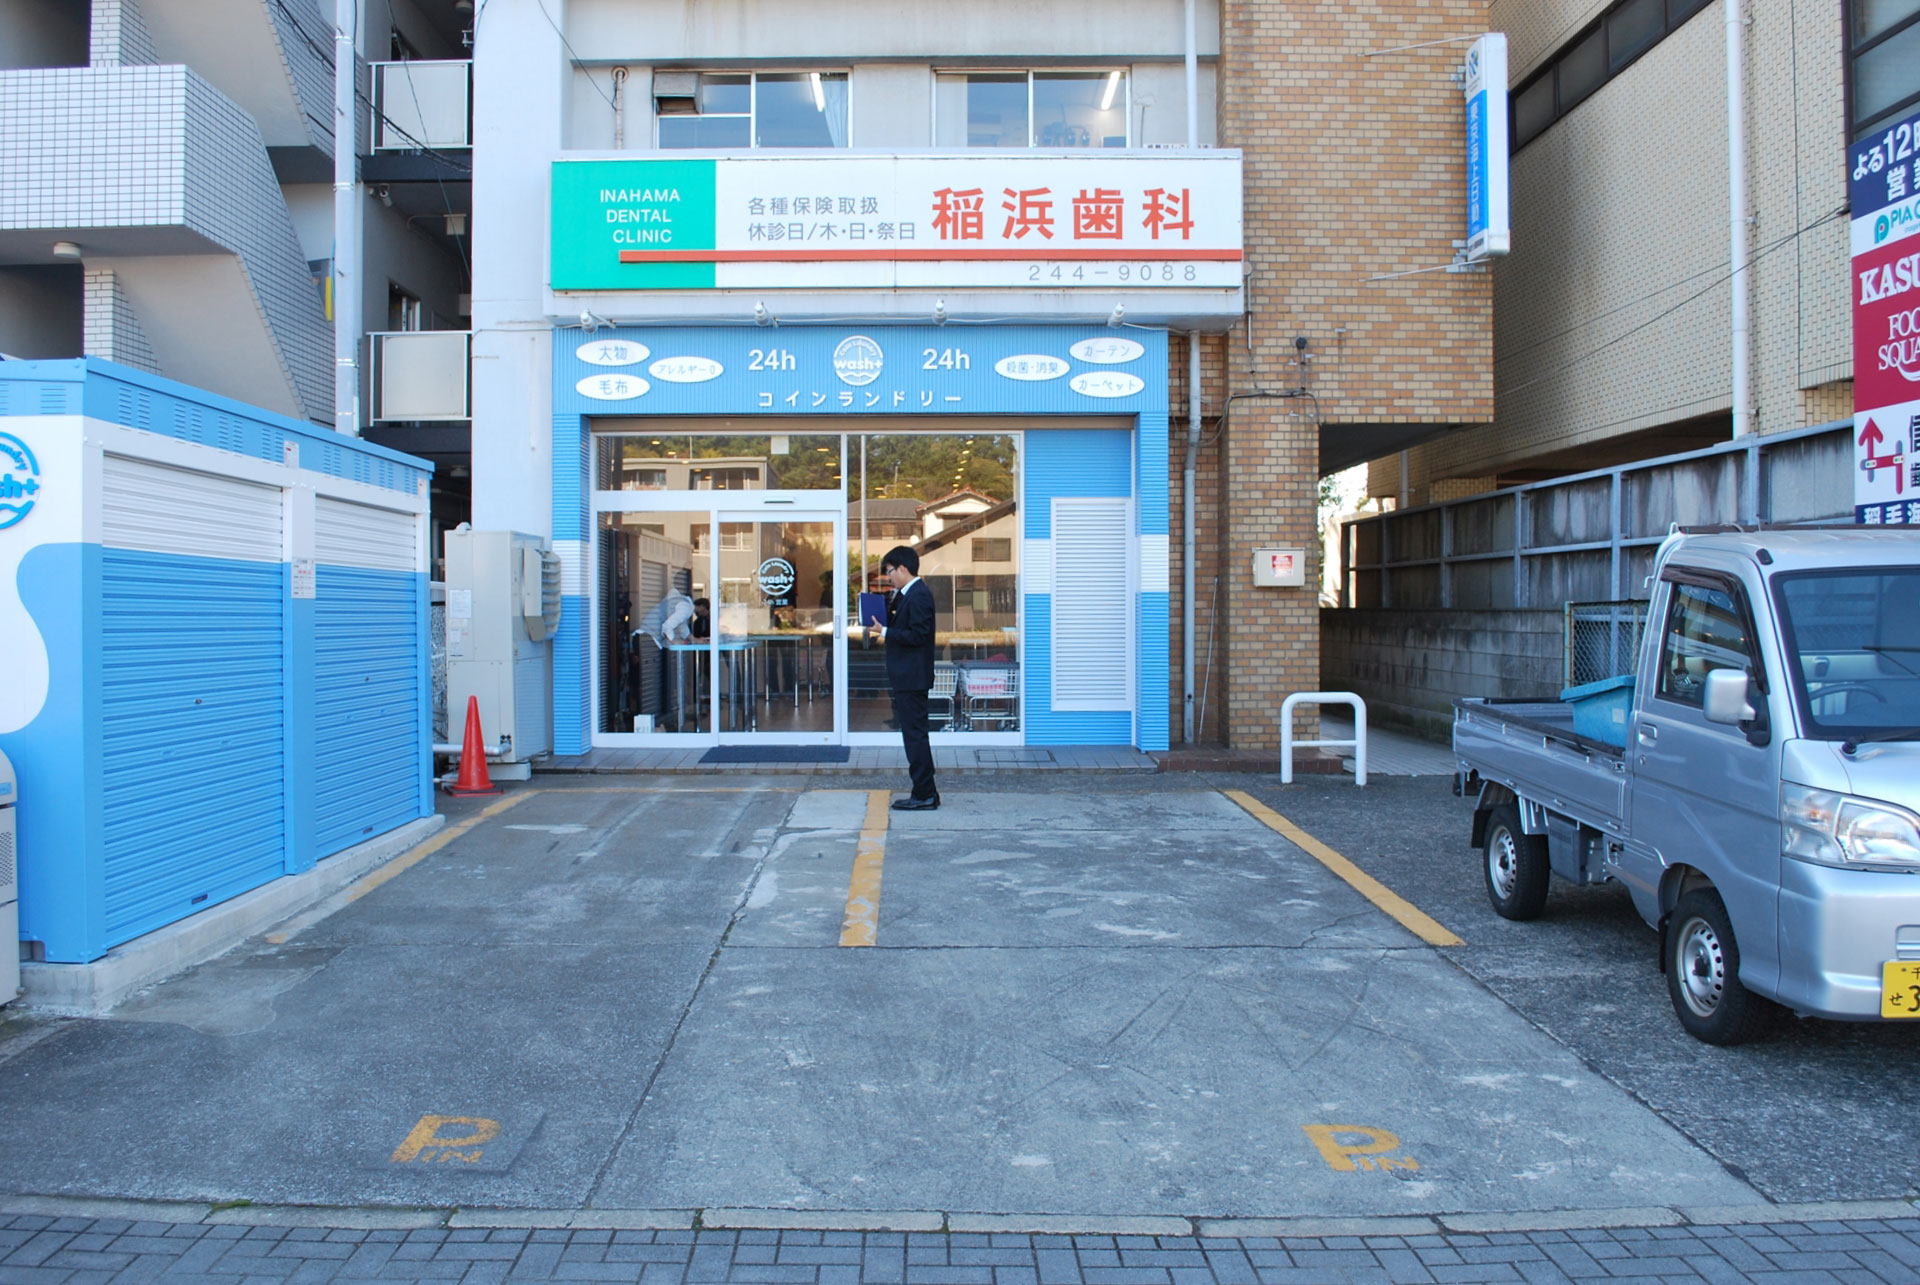 画期的なコインランドリー「Smart Laundry」を導入したコインランドリー店舗「コインランドリーwash+稲毛海岸店」(千葉県千葉市)